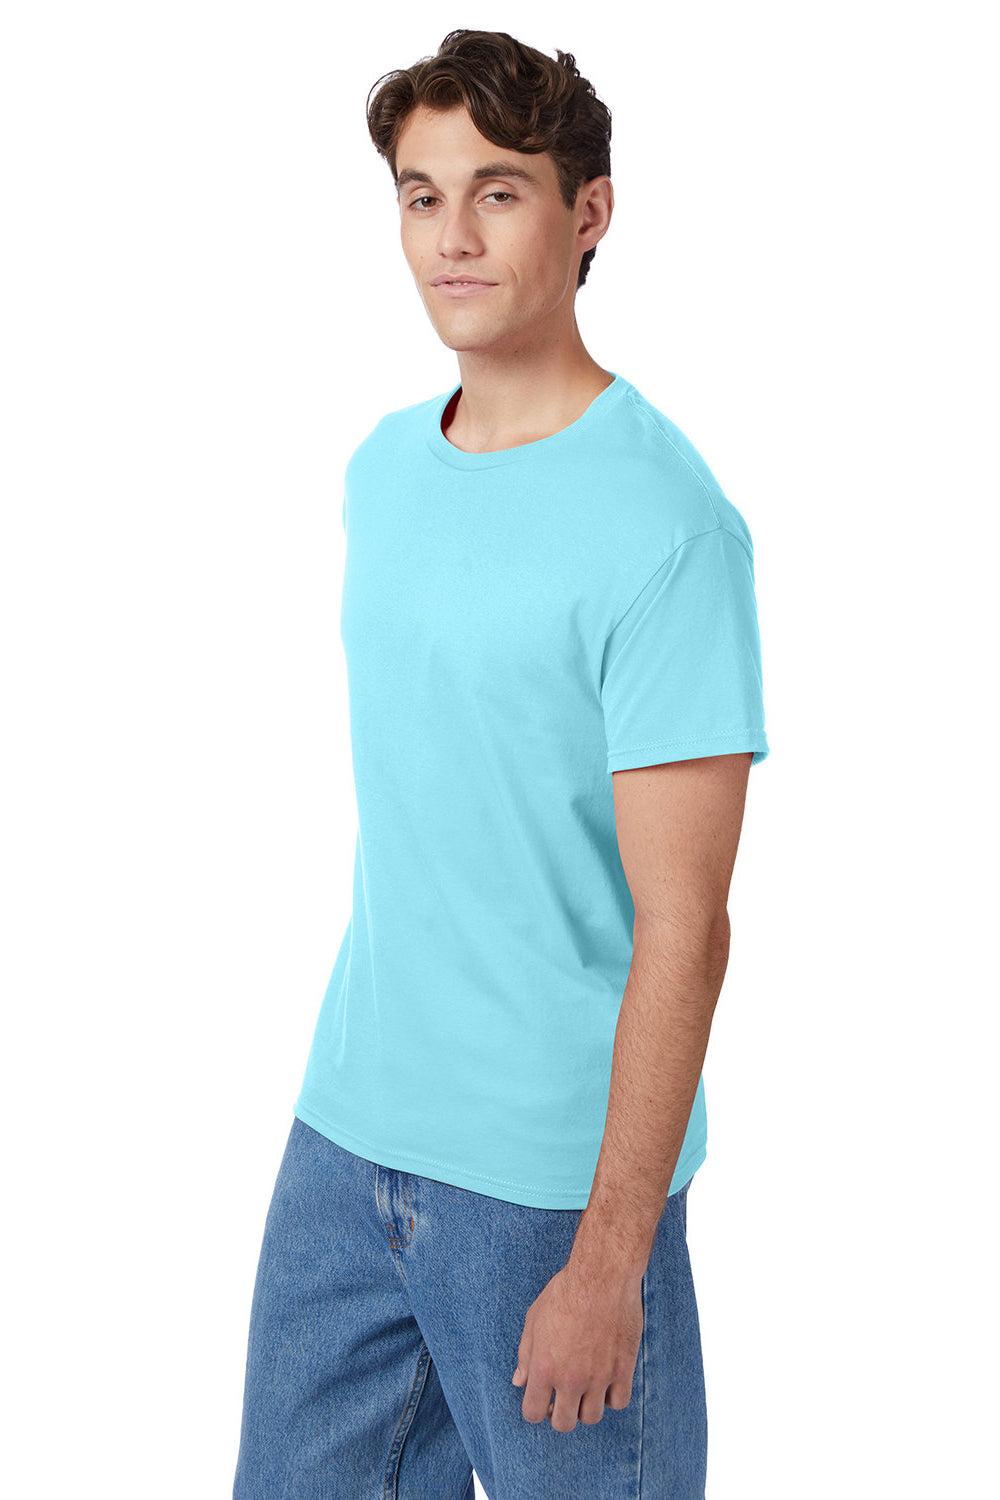 Hanes 5250/5250T Mens ComfortSoft Short Sleeve Crewneck T-Shirt Clean Mint Blue 3Q